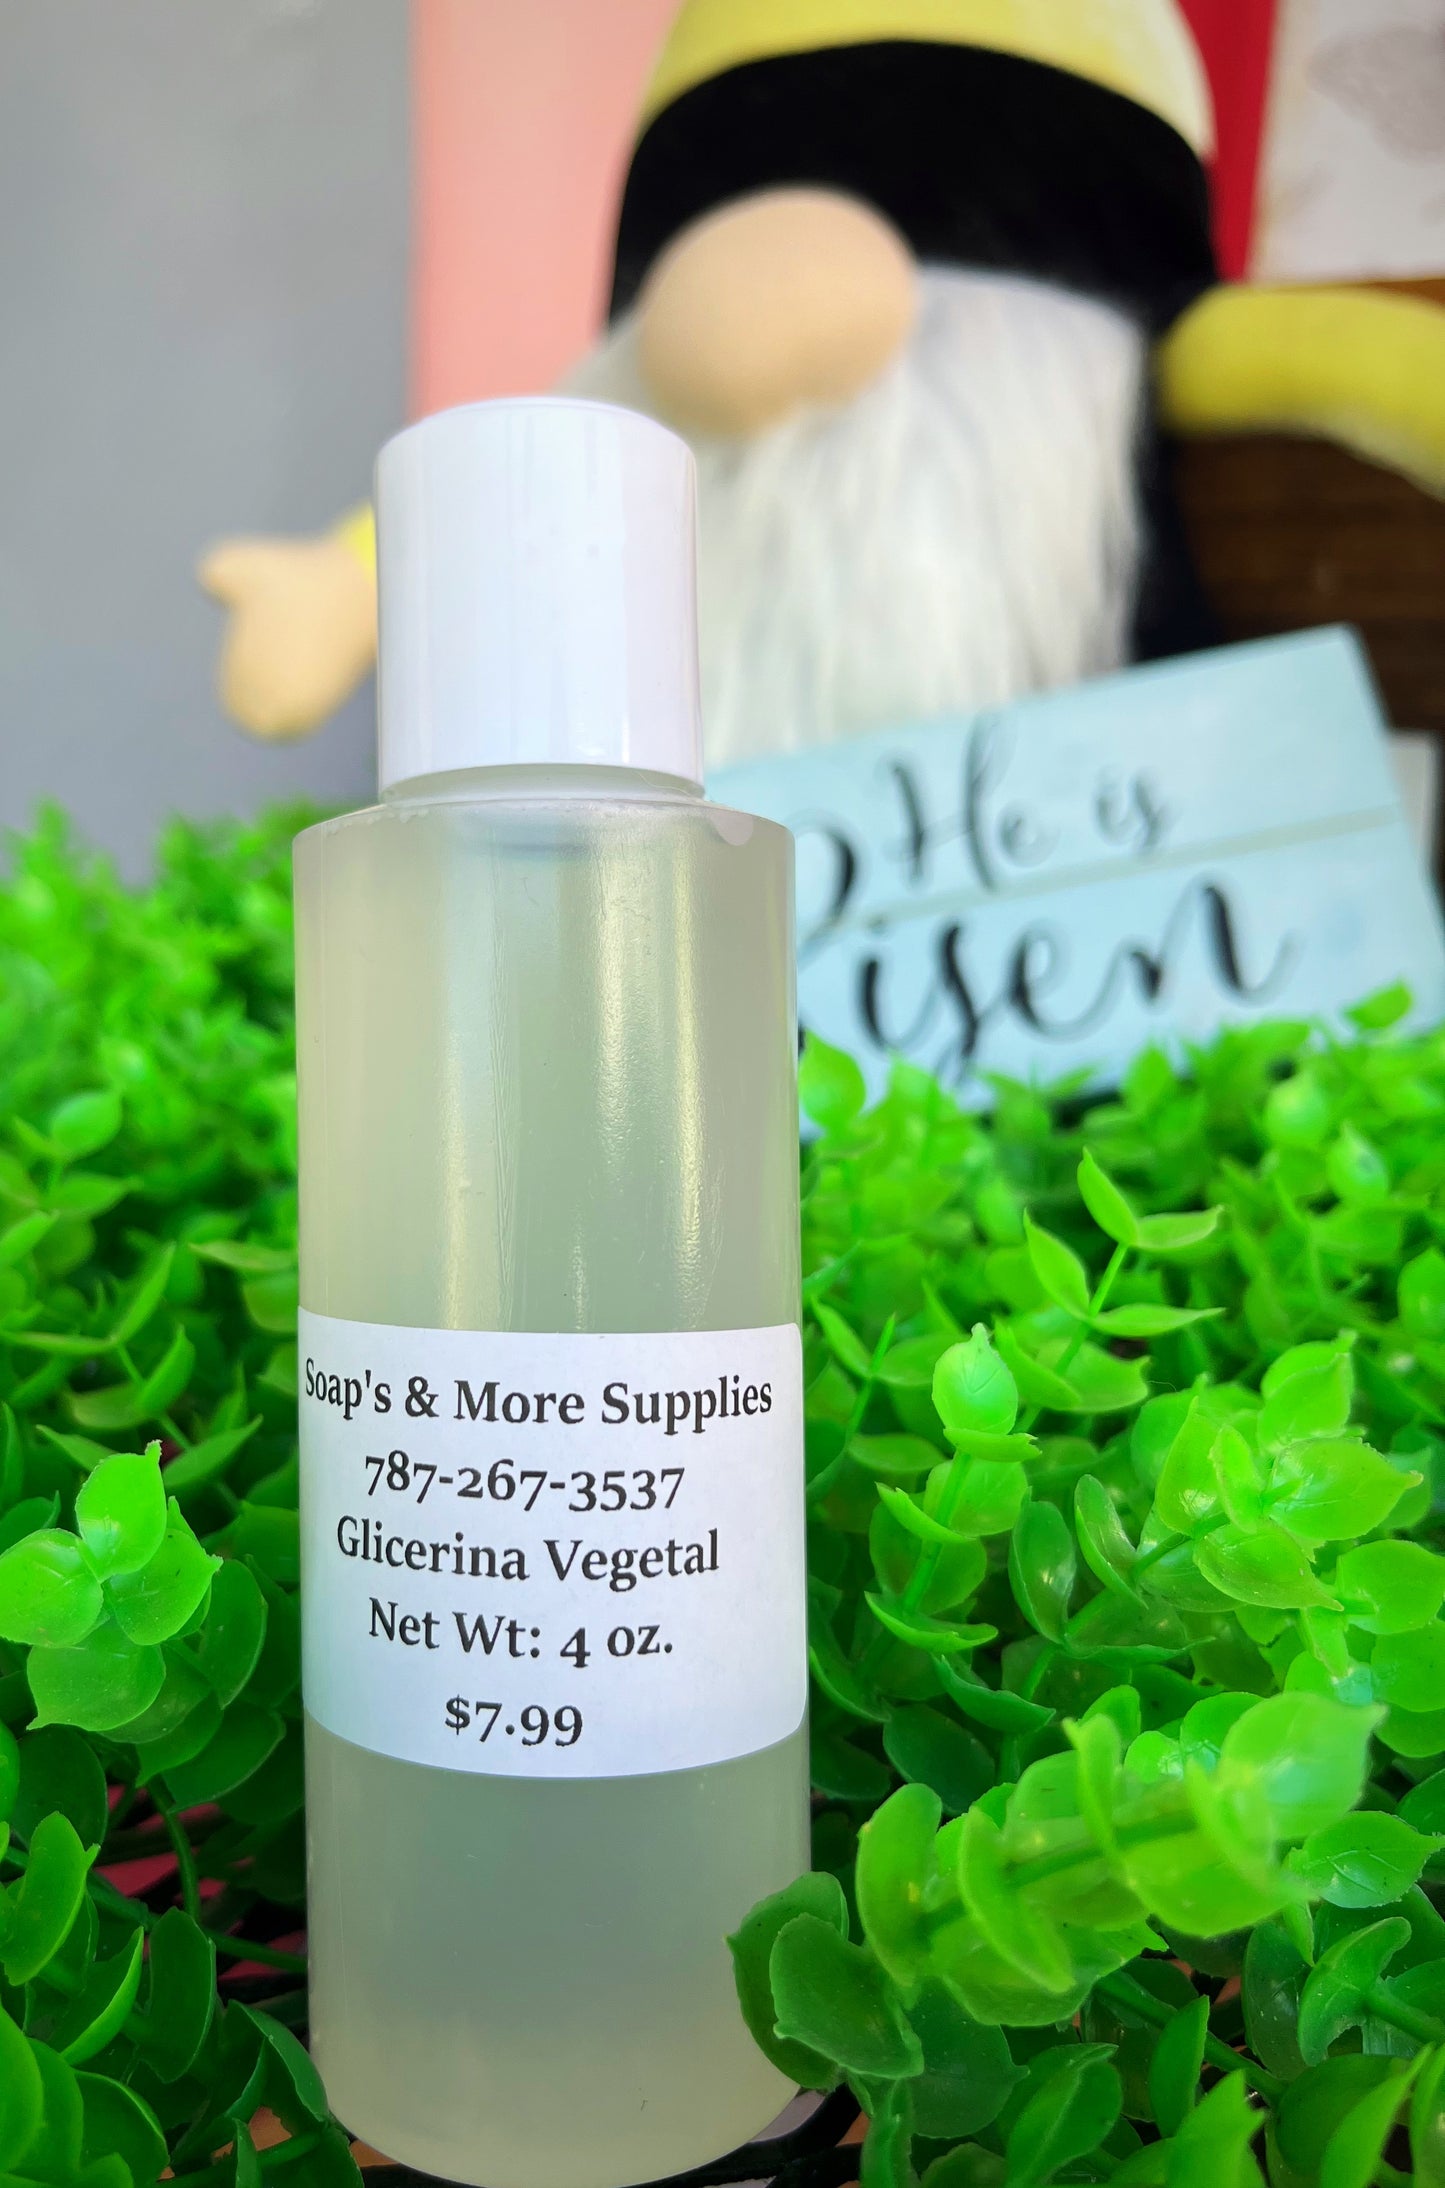 Glicerina Vegetal 4 oz. – Soap's & More Supplies LLC